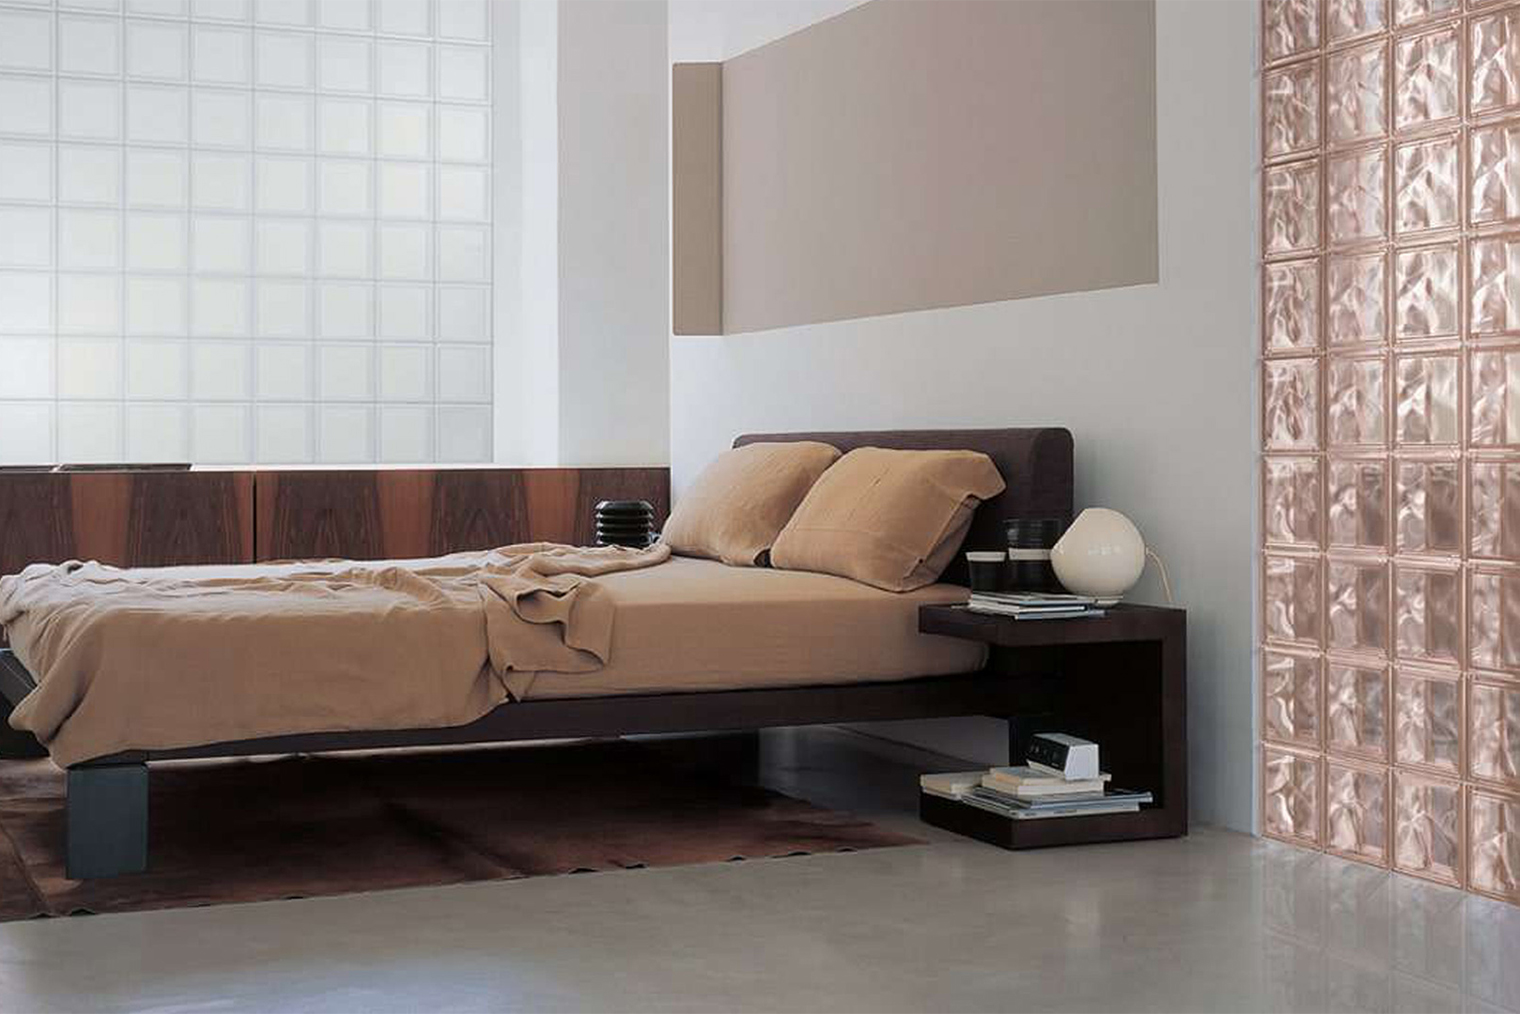 Розовые стеклоблоки красиво отделяют зону гостиной от спальни. Источник: sevesglassblock.com